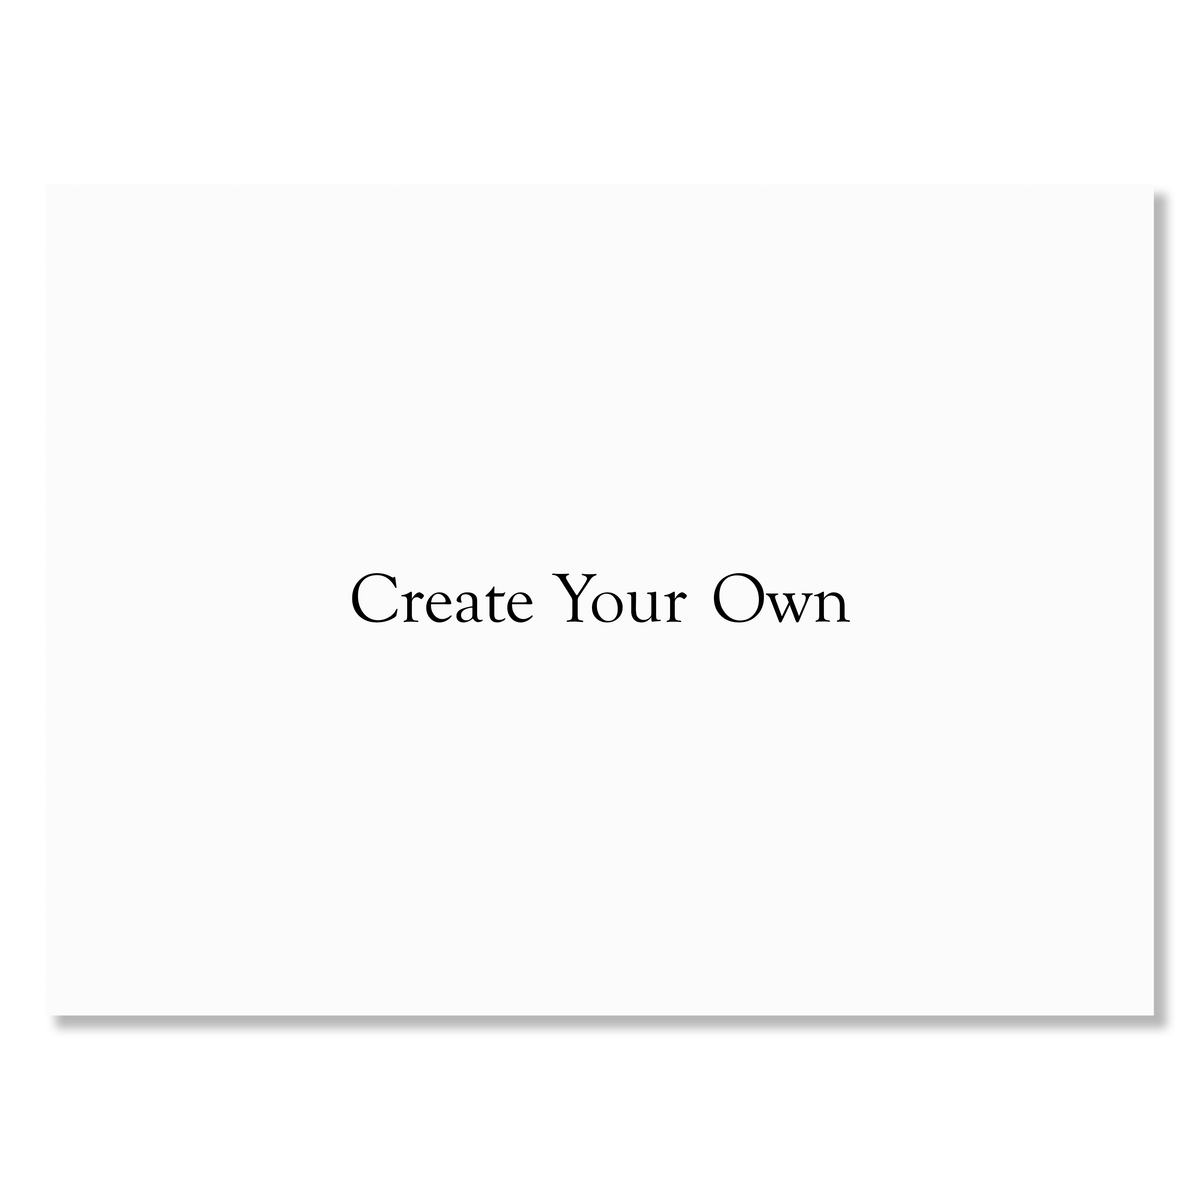 Create Your Own Custom Yard Sign - 24 x 18 Gartner Studios Sidewalk &amp; Yard Signs 98180